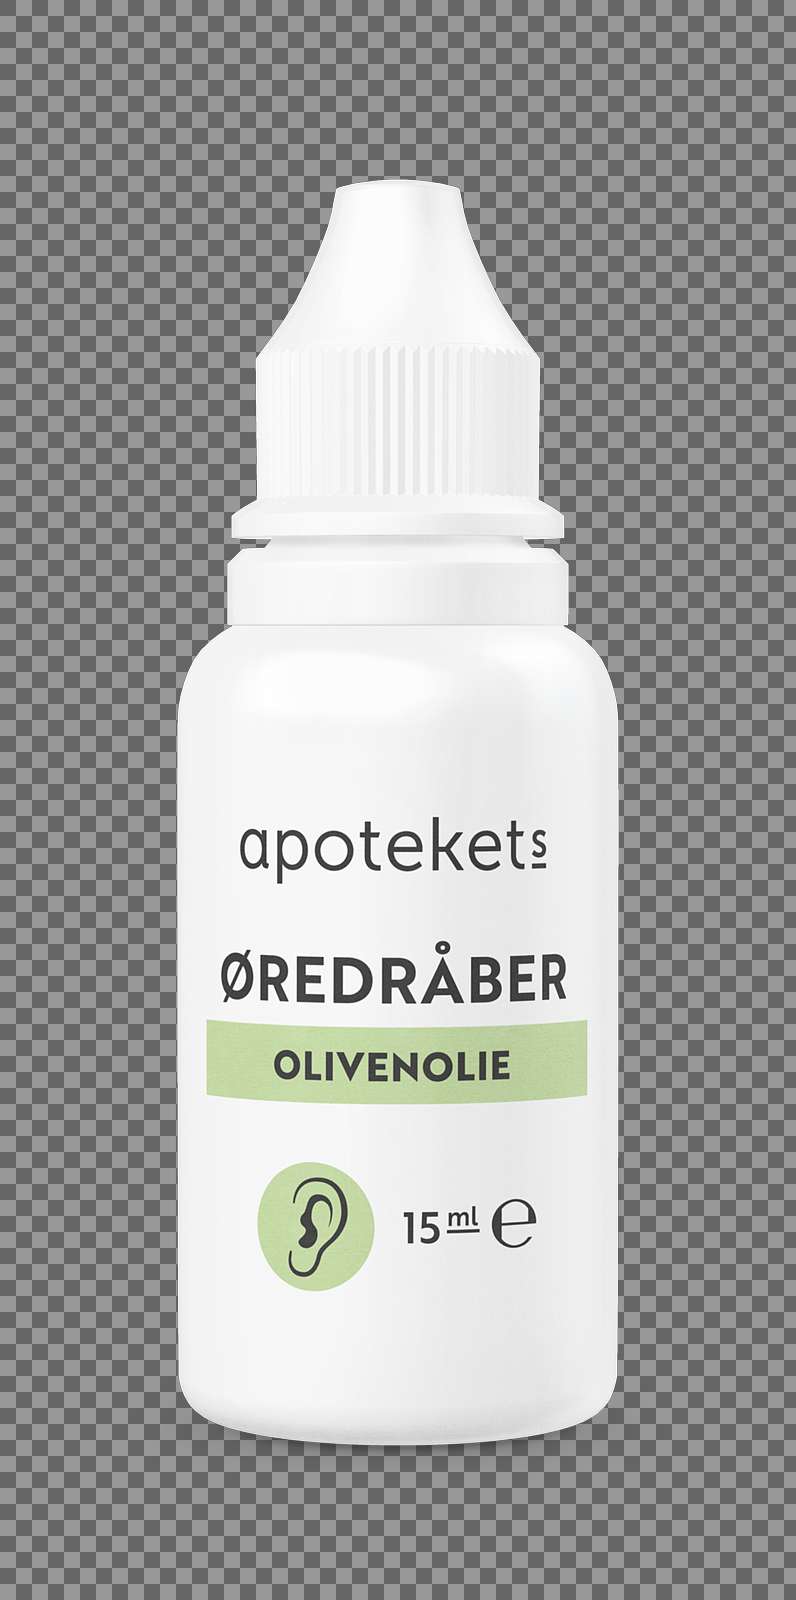 224528_Apotekets Øredråber olivenolie 15ml